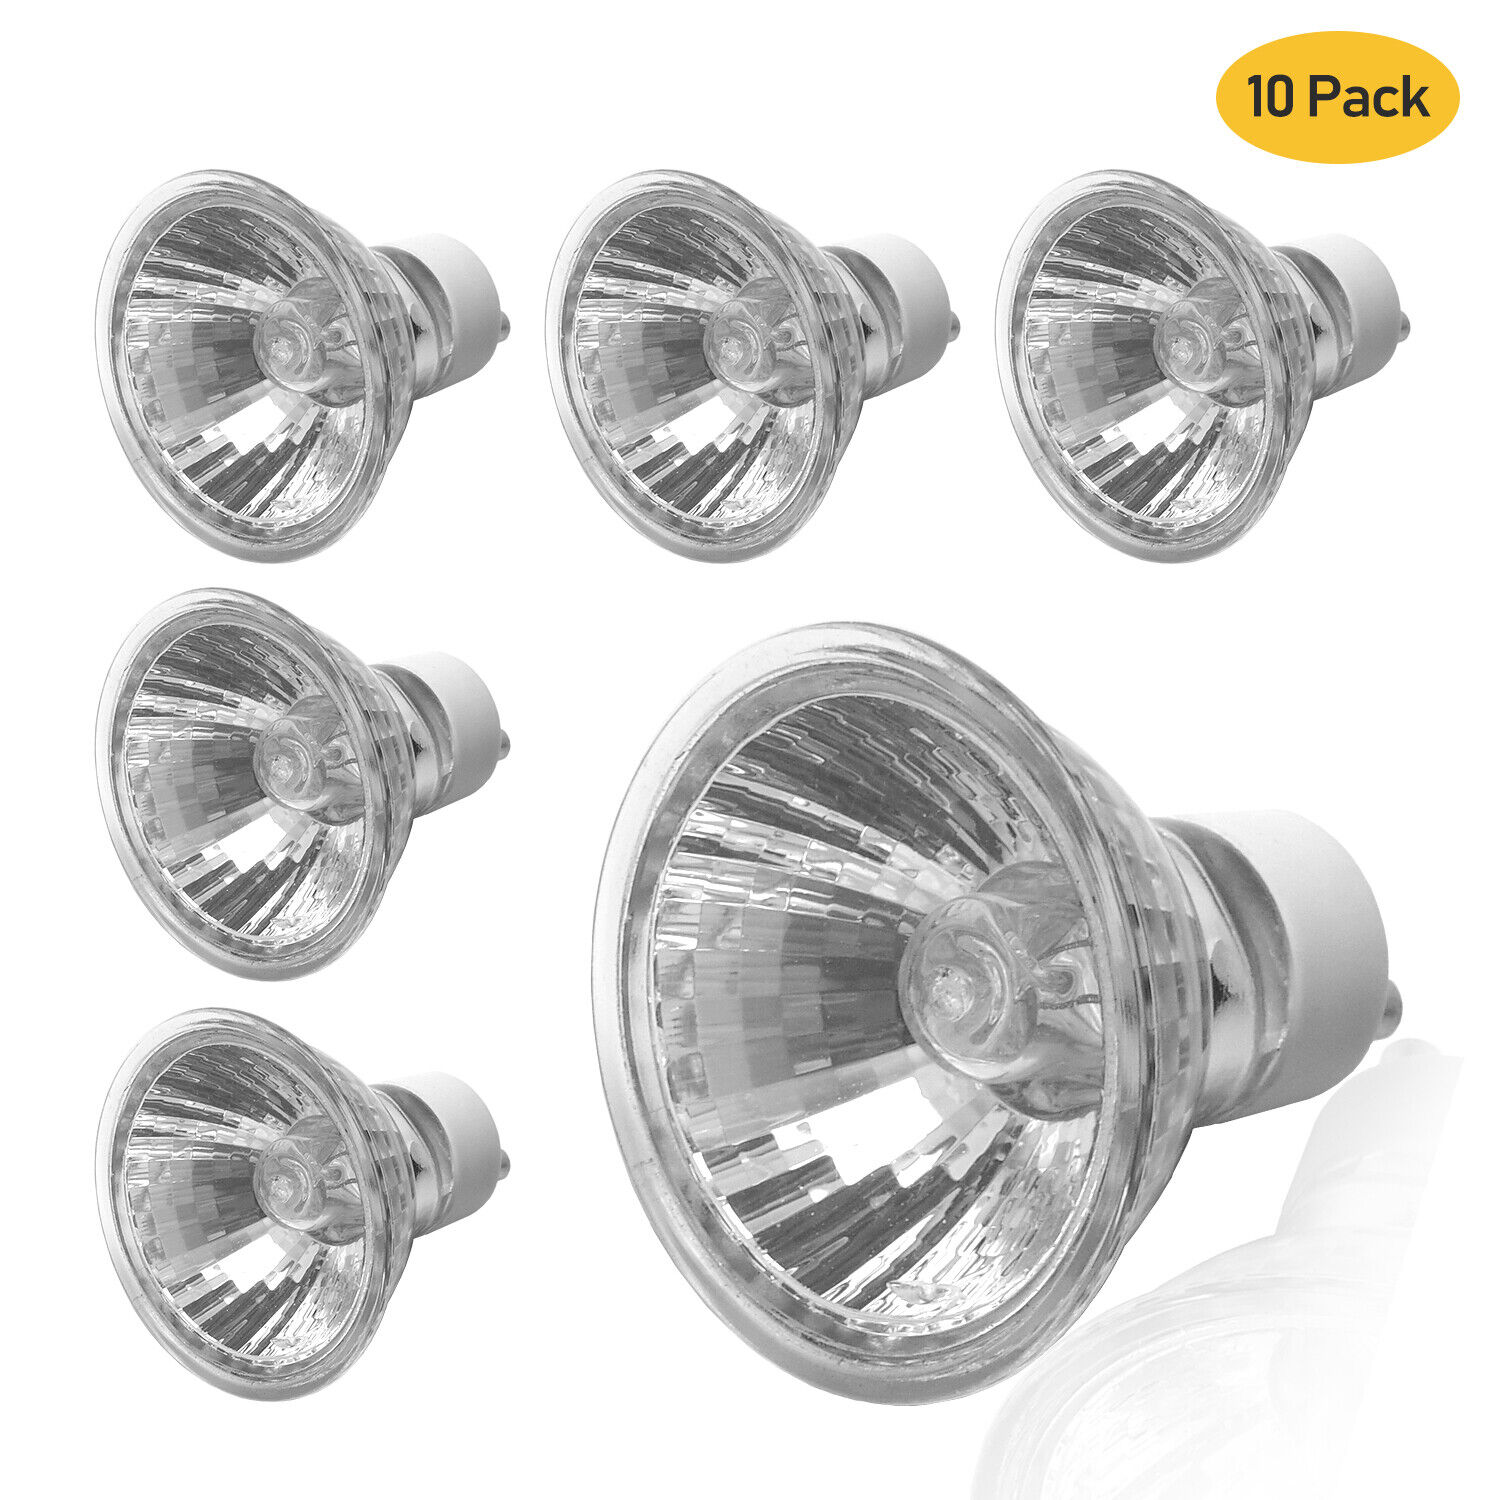 LS [10-Pack] GU10 Base Halogen Bulb 12V 20W Glass Cover Light Bulbs